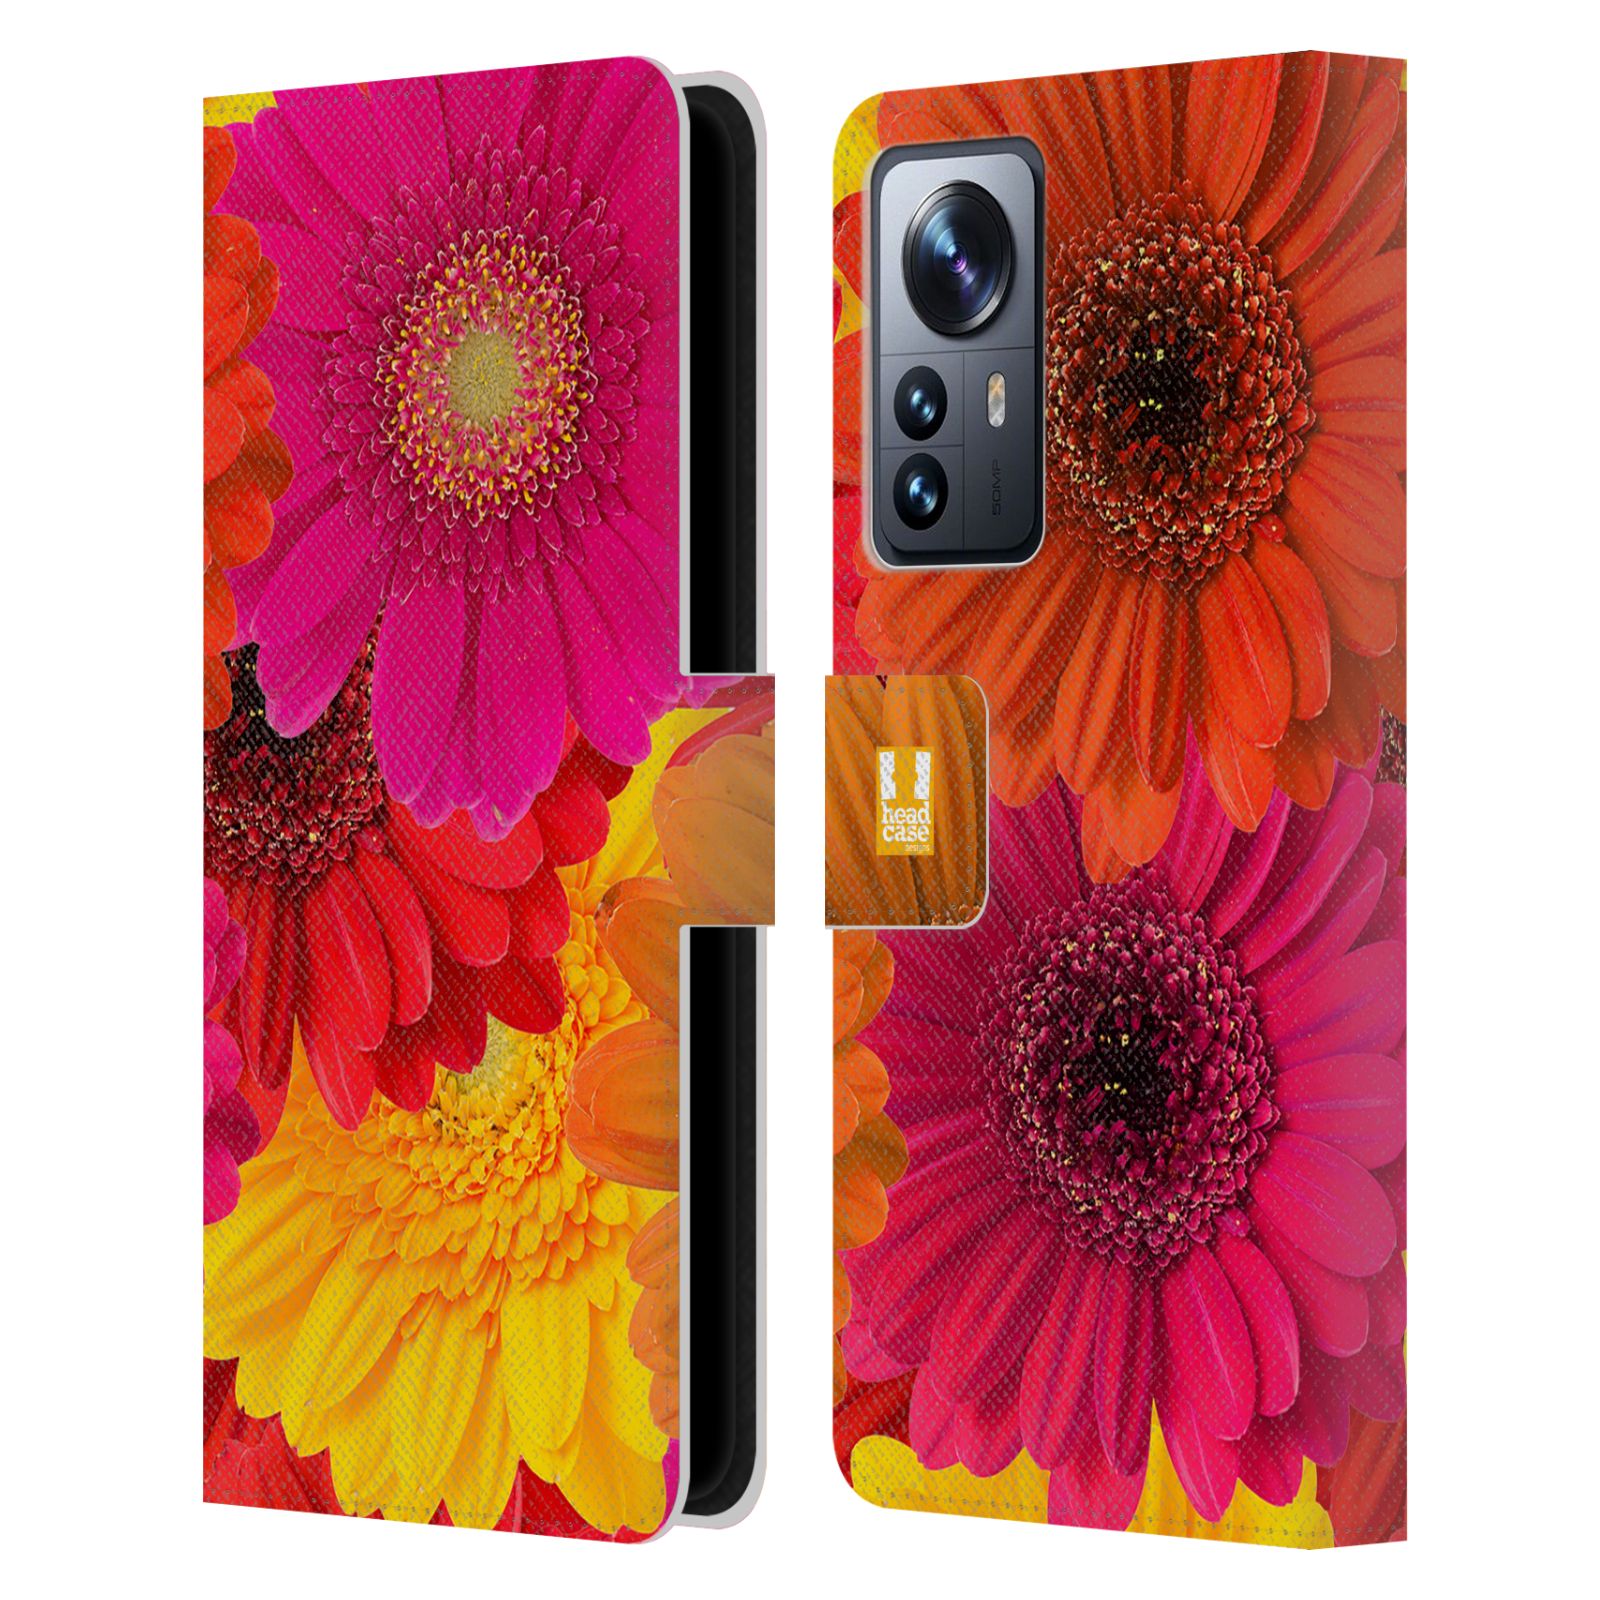 Pouzdro HEAD CASE na mobil Xiaomi 12 PRO květy foto fialová, oranžová GERBERA